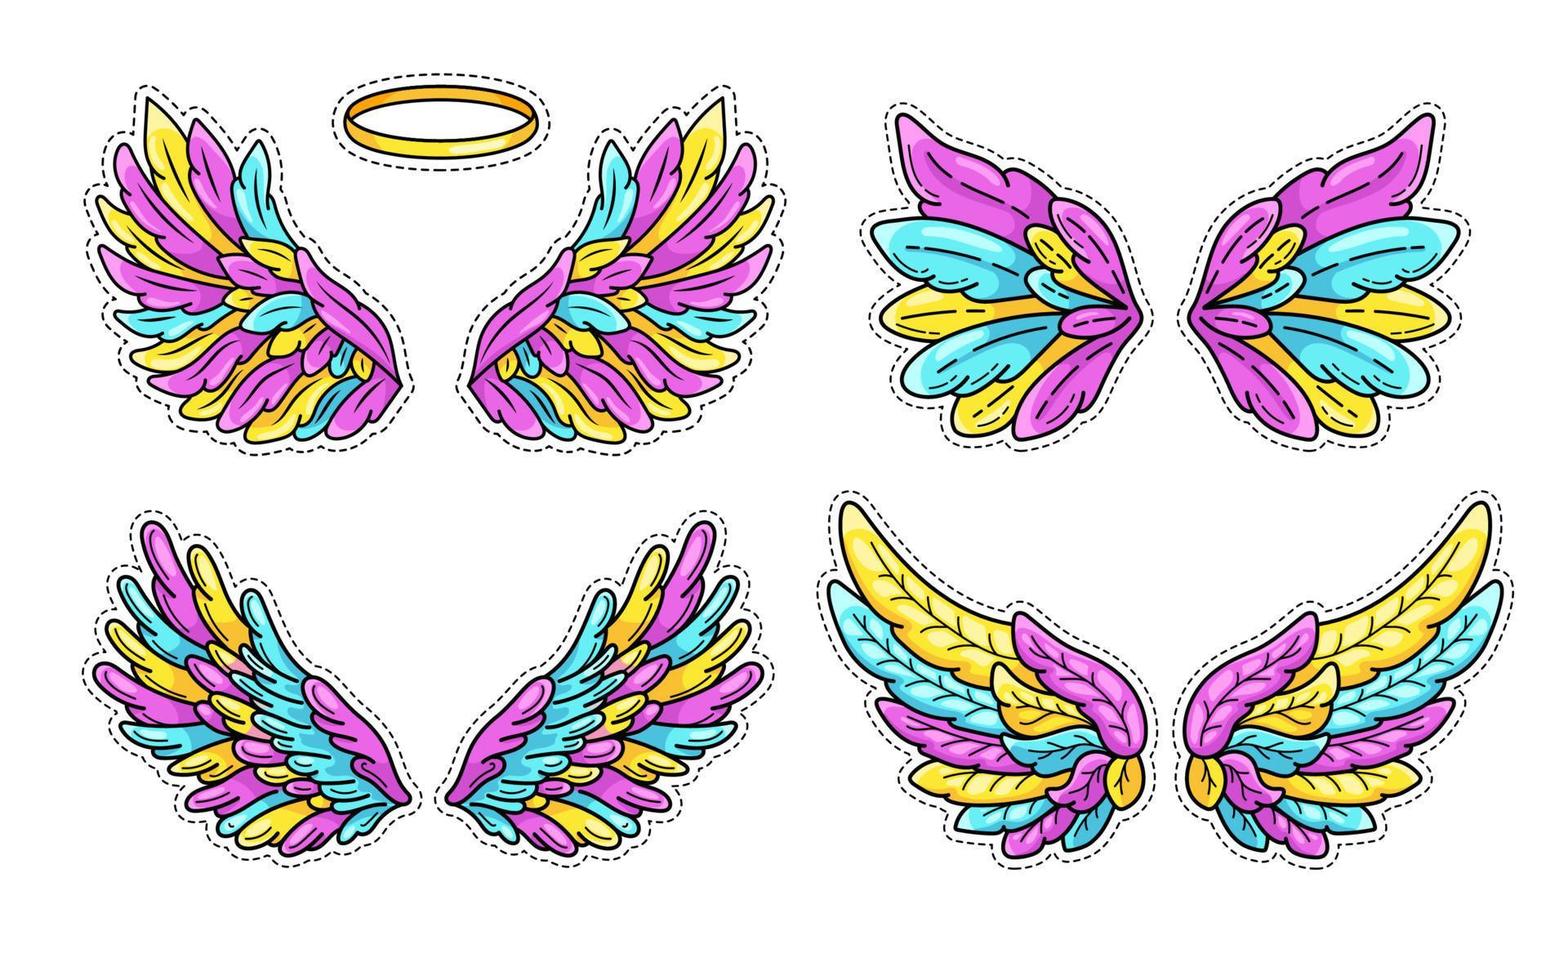 colección de pegatinas de alas mágicas al estilo de los cómics de arte pop juvenil de los años 80-90. amplias alas de ángel y halo.elemento de parche de moda retro inspirado en dibujos animados antiguos.ilustración vectorial aislada en blanco vector